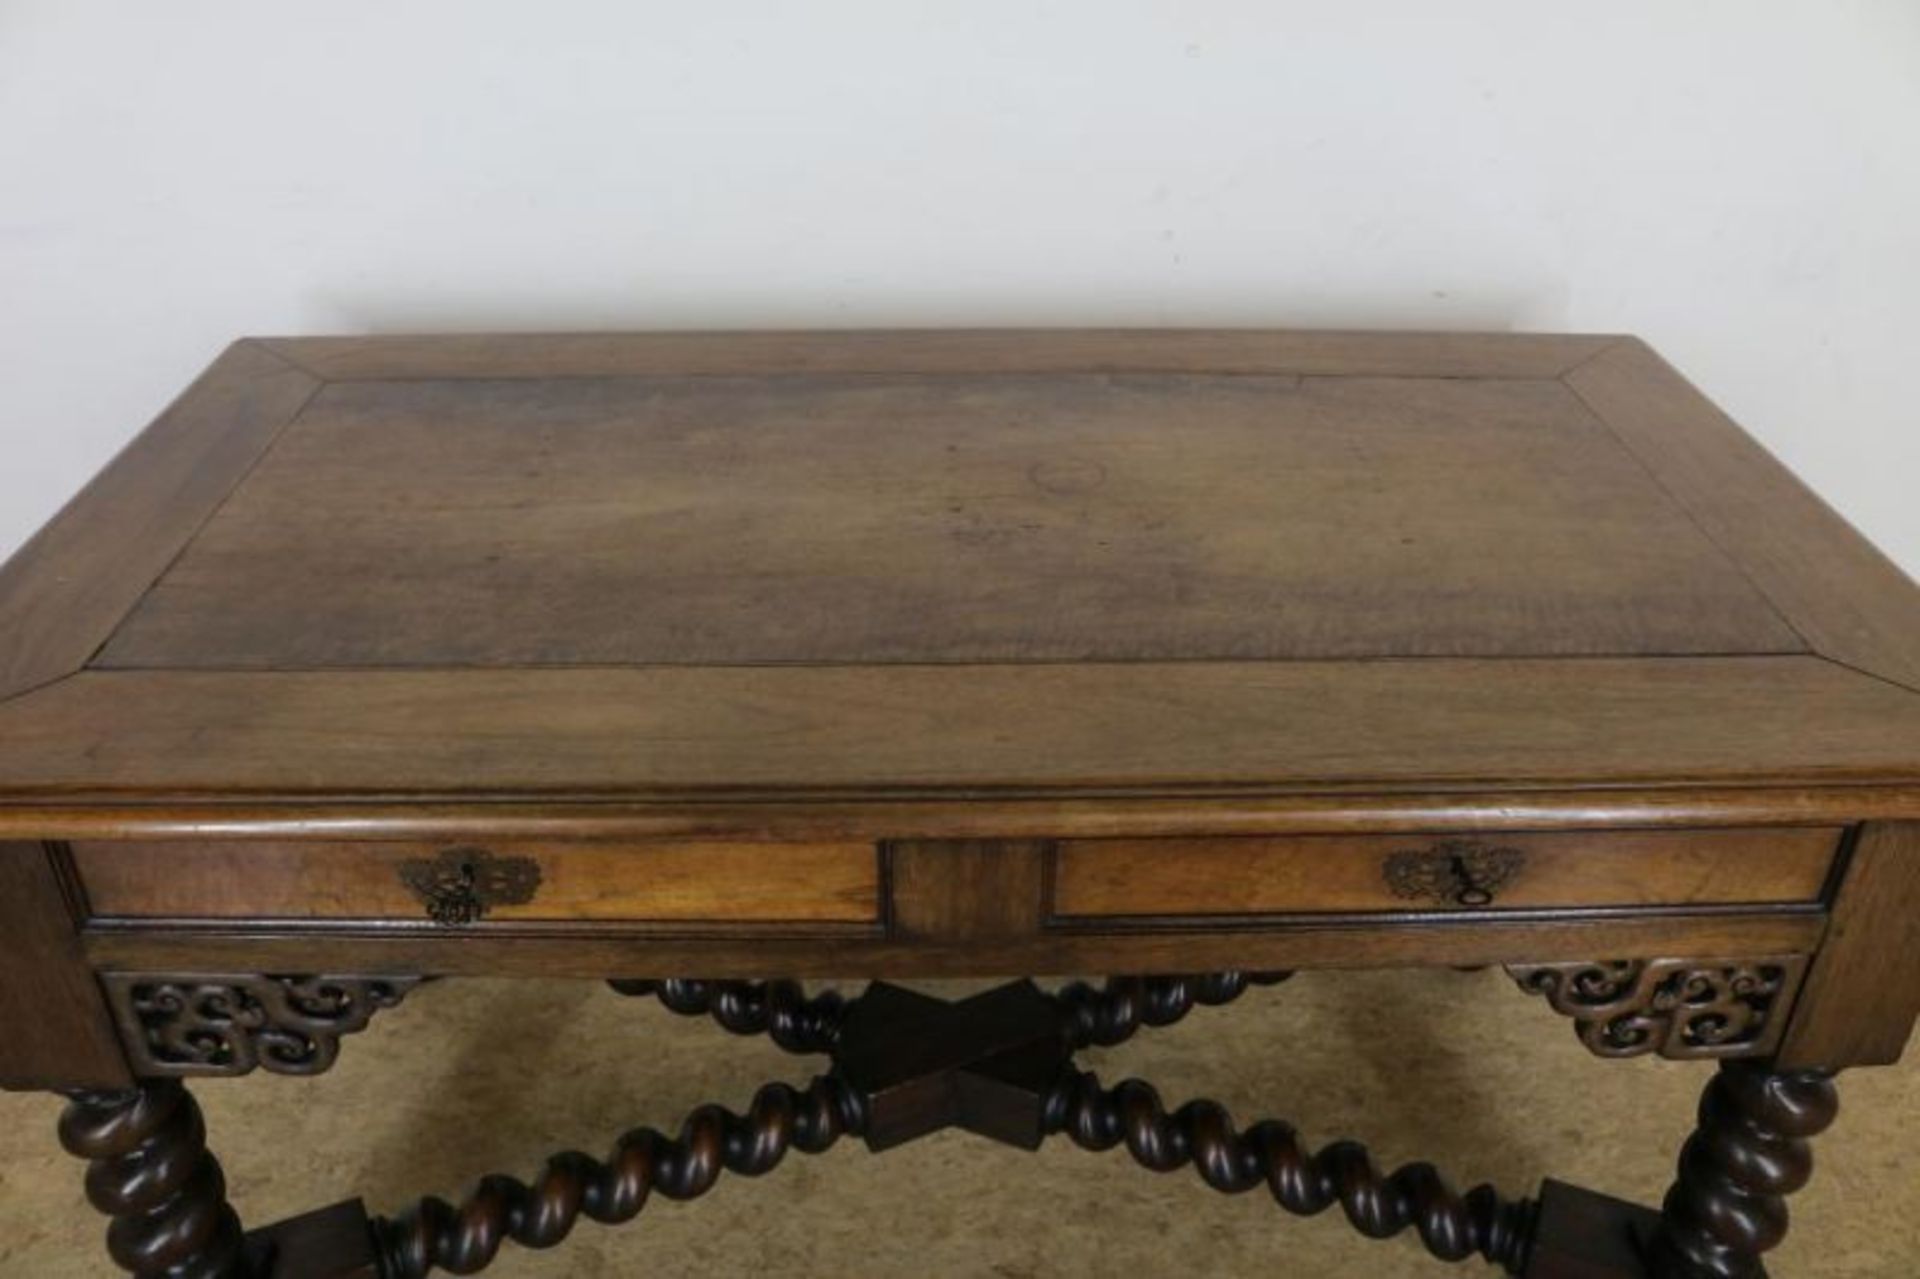 Mahonie schrijftafel met 2 laden op gedraaide poten verbonden door regels, h. 77, br. 145, d. 80 cm. - Bild 3 aus 4